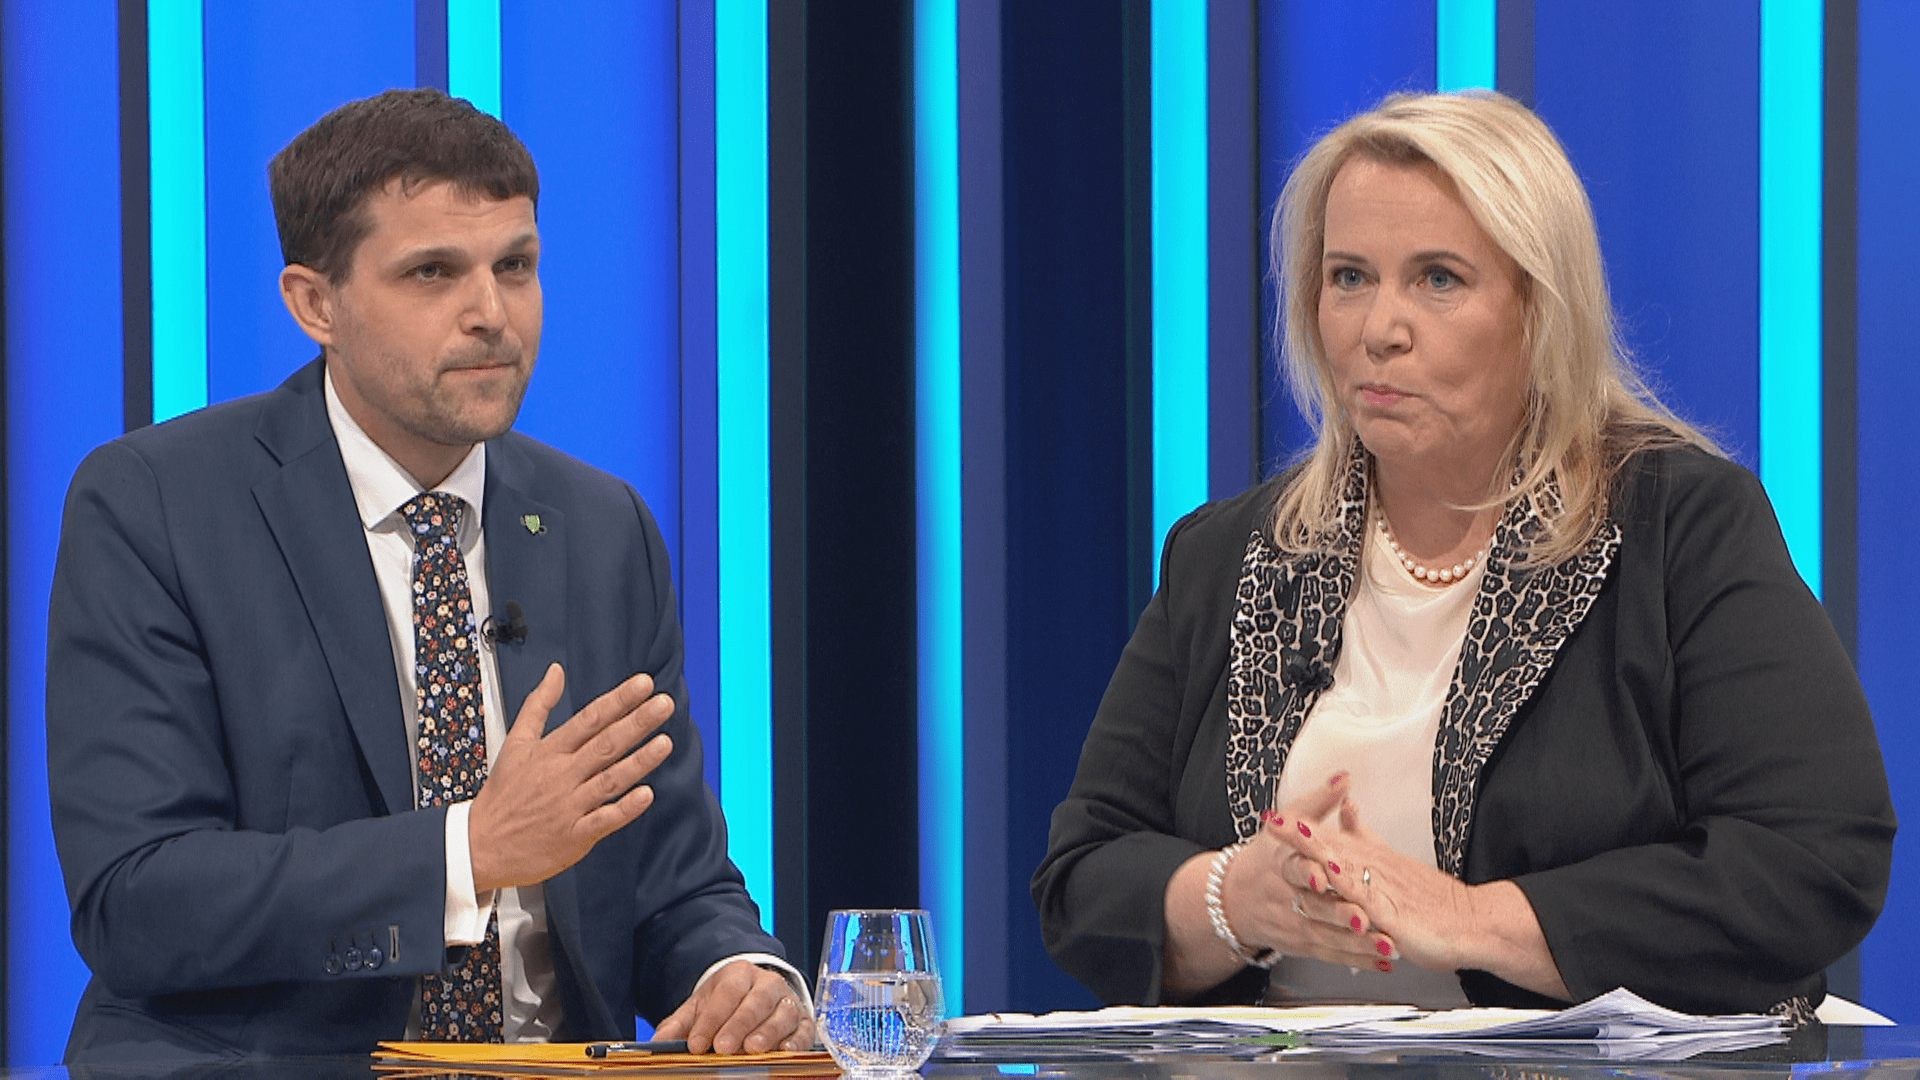 Ministr životního prostředí Petr Hladík (KDU-ČSL) a poslankyně Klára Dostálová (za ANO)